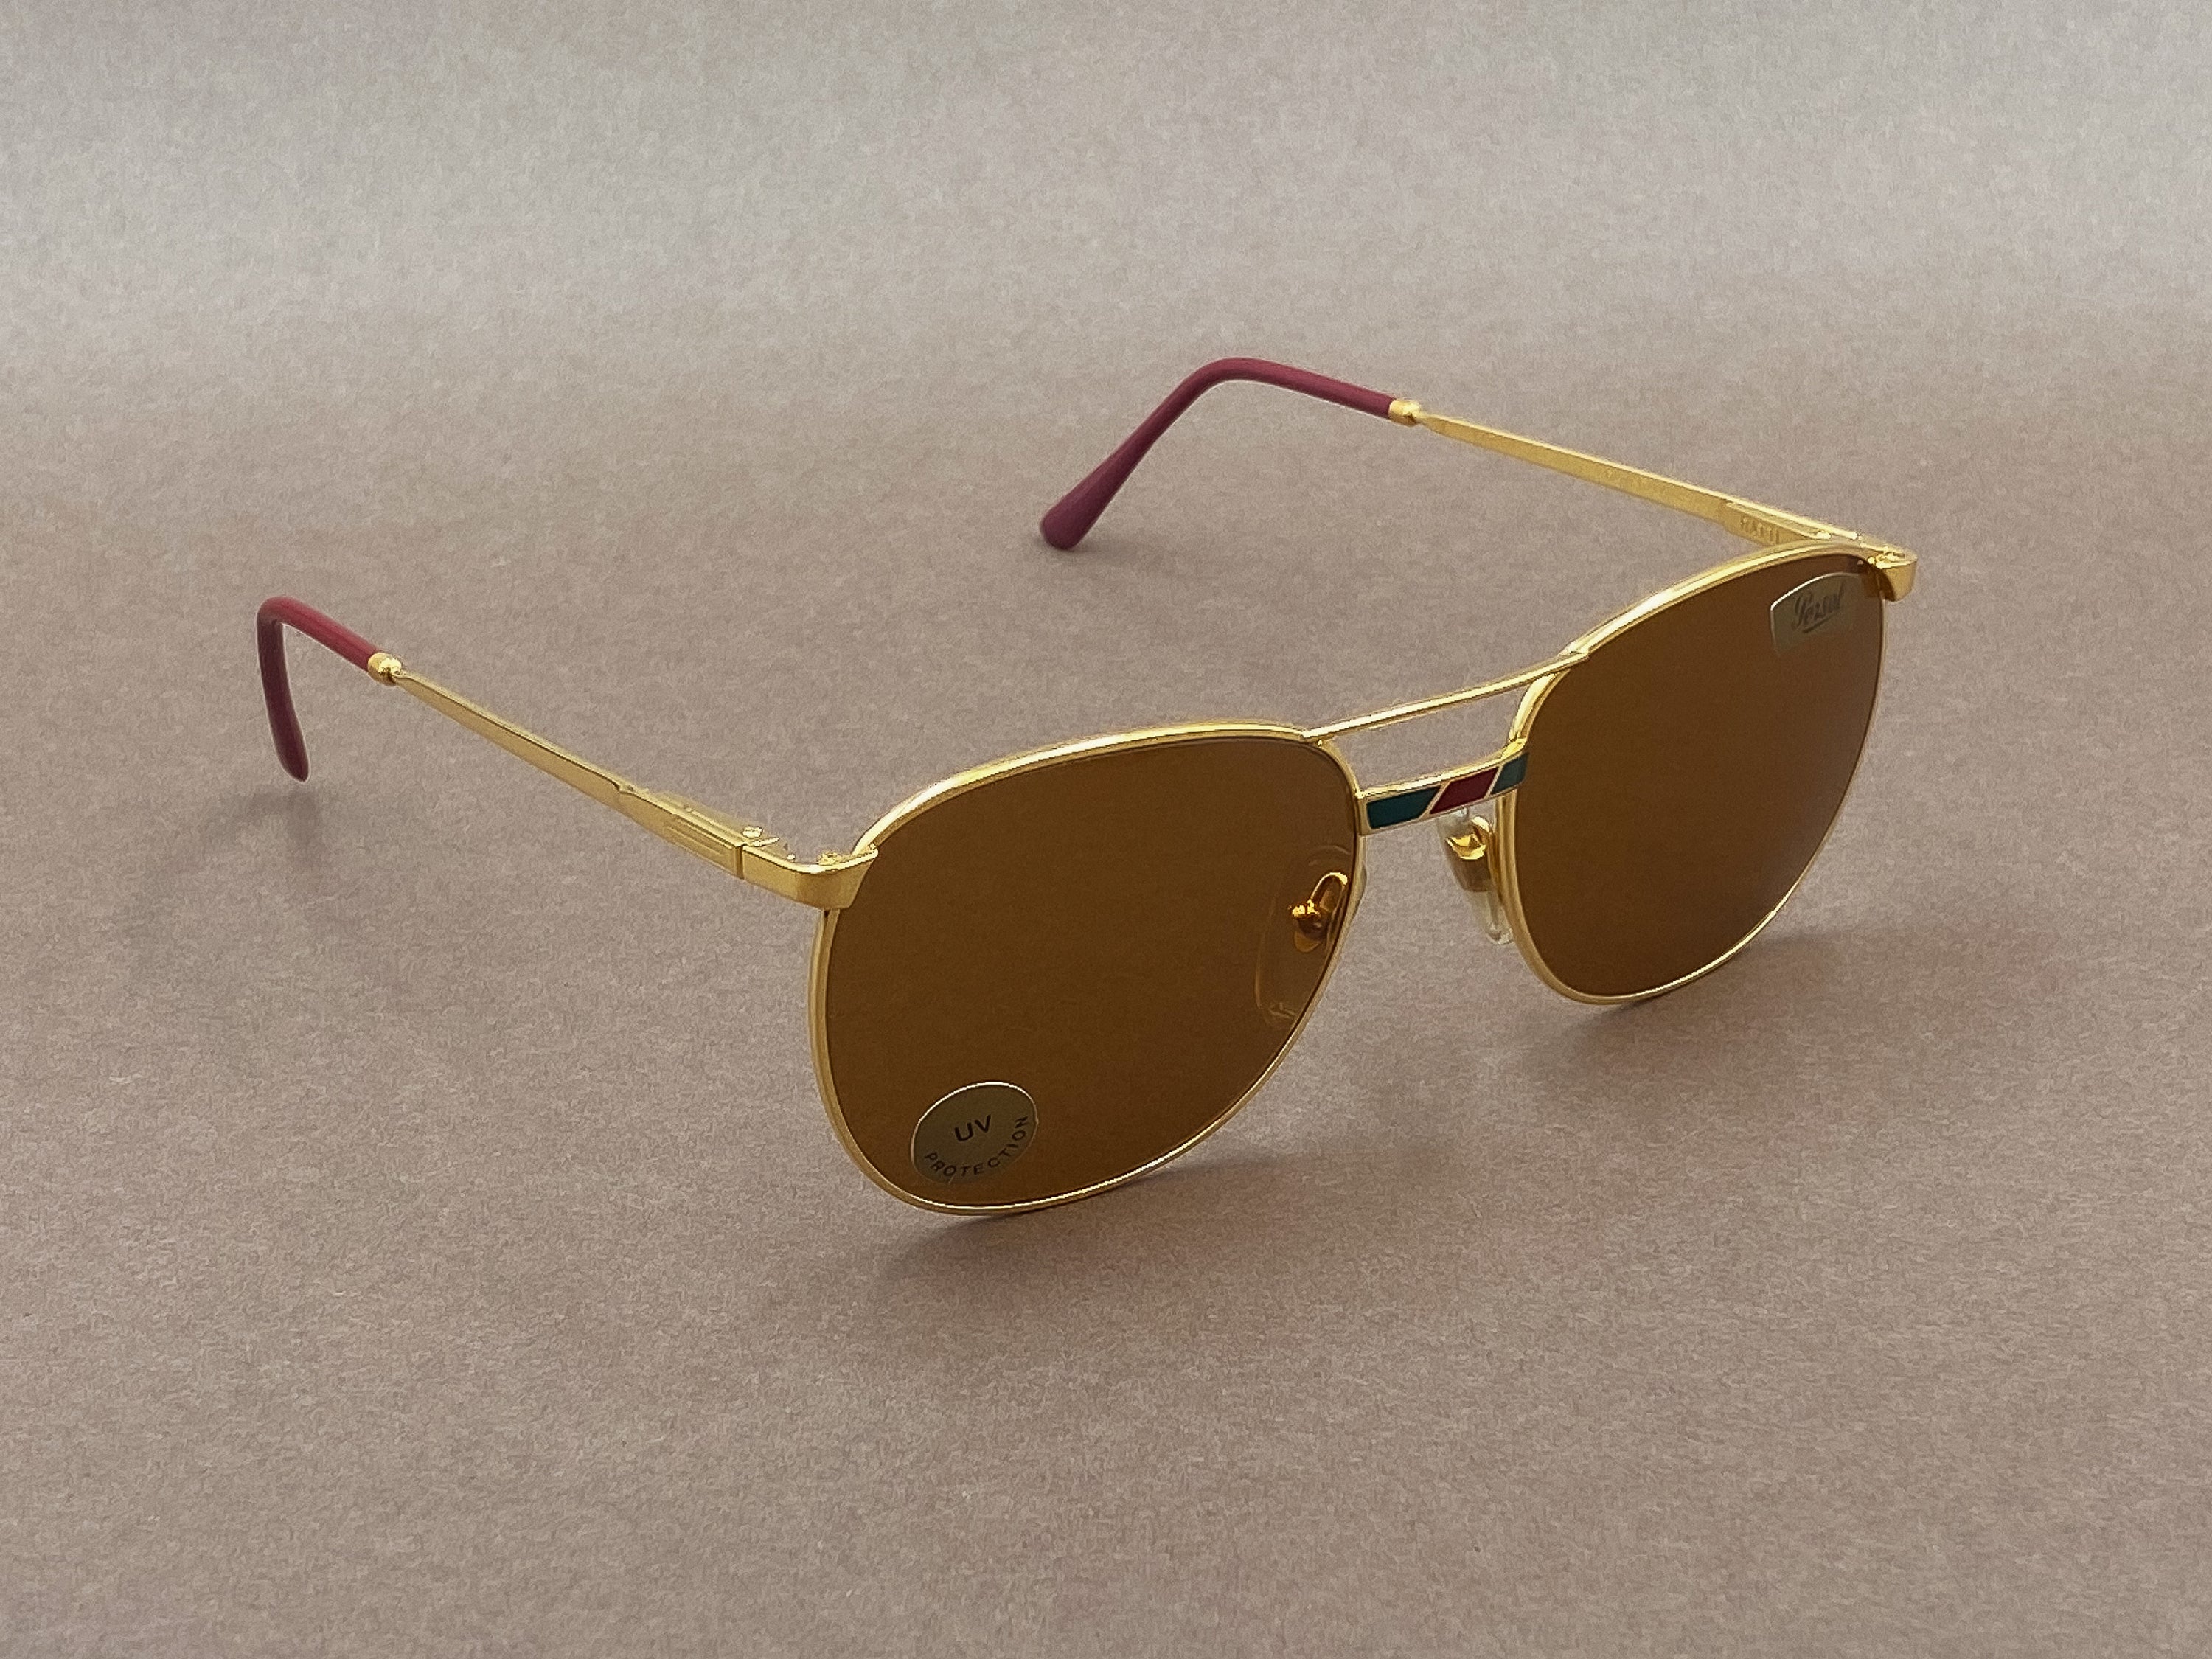 Persol Ratti Avon sunglasses